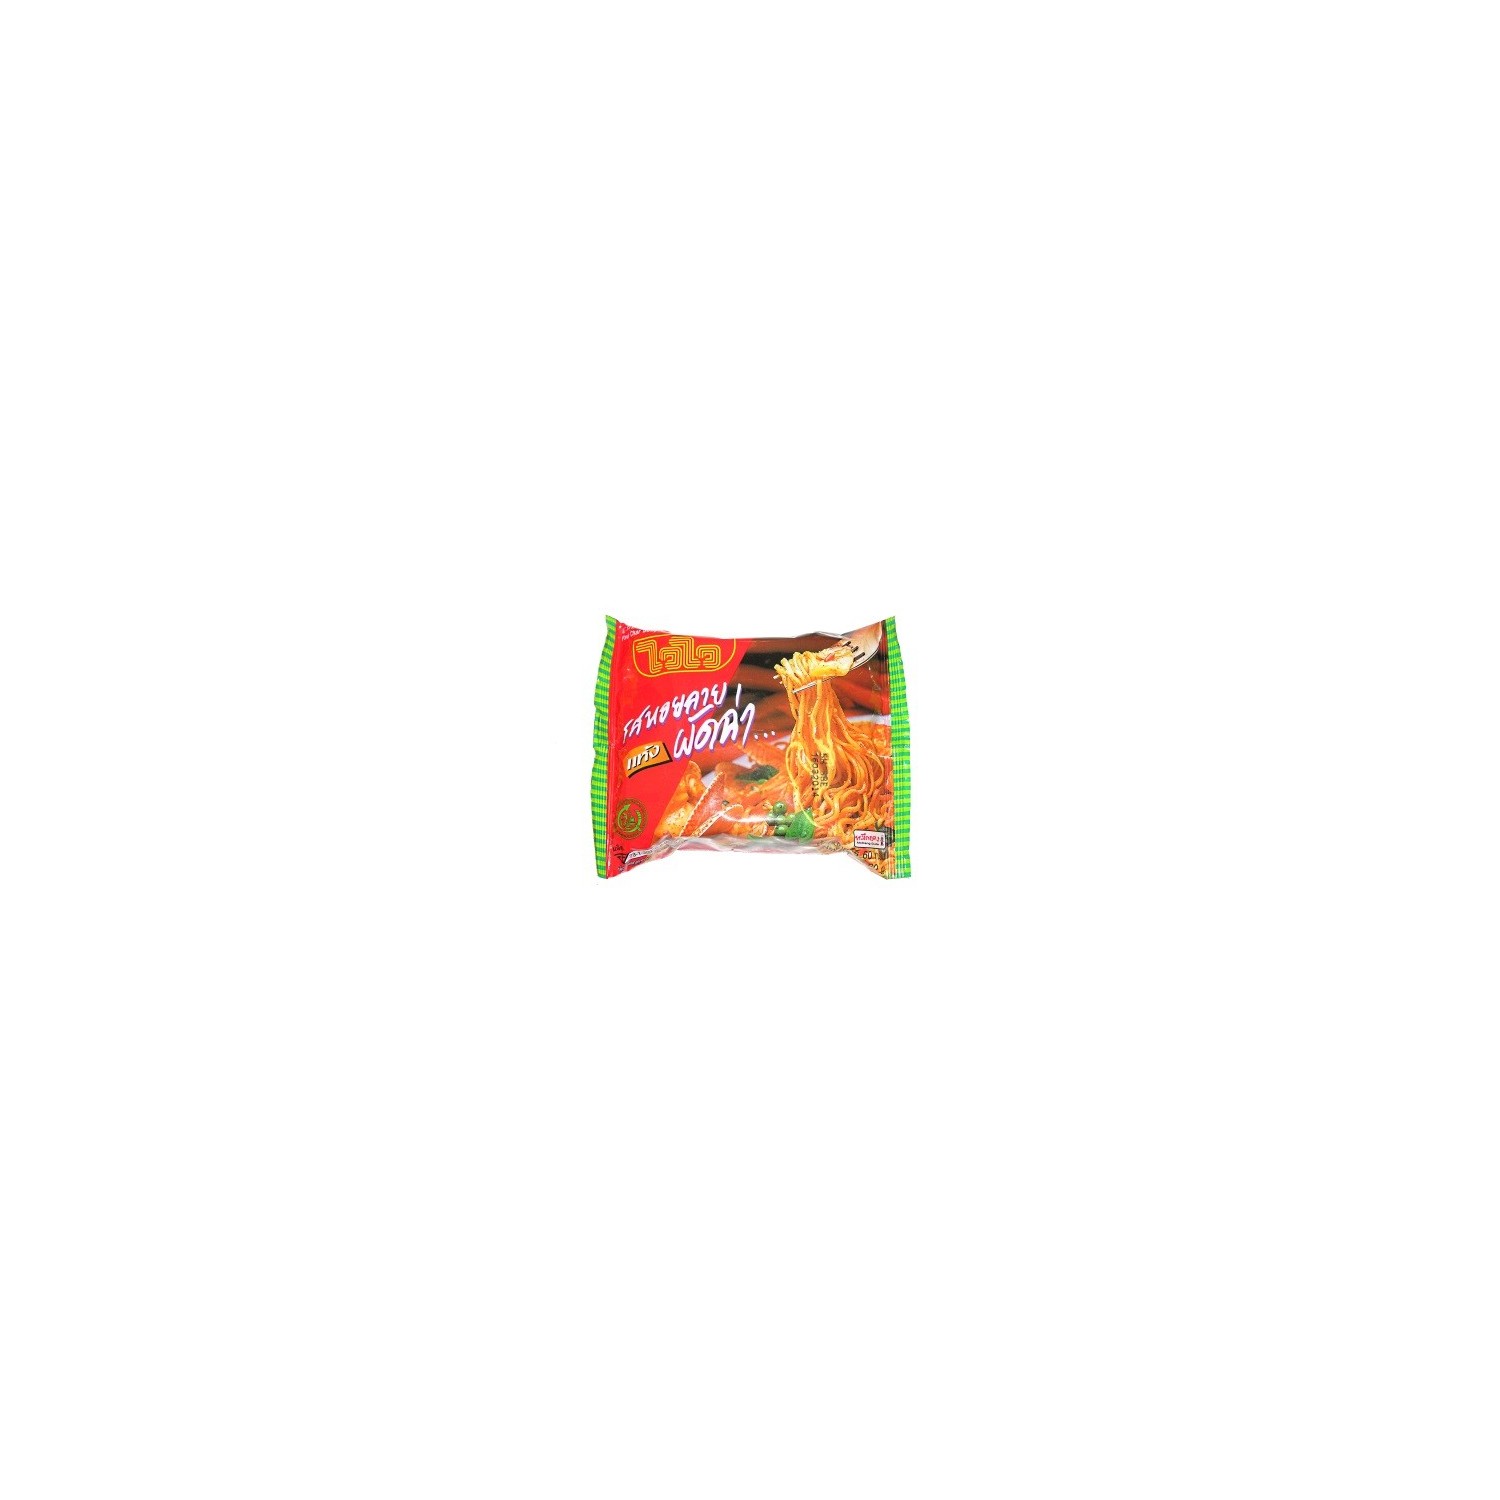 Wai Wai  - Instant Noodles - Baby clam Flavour - 60g